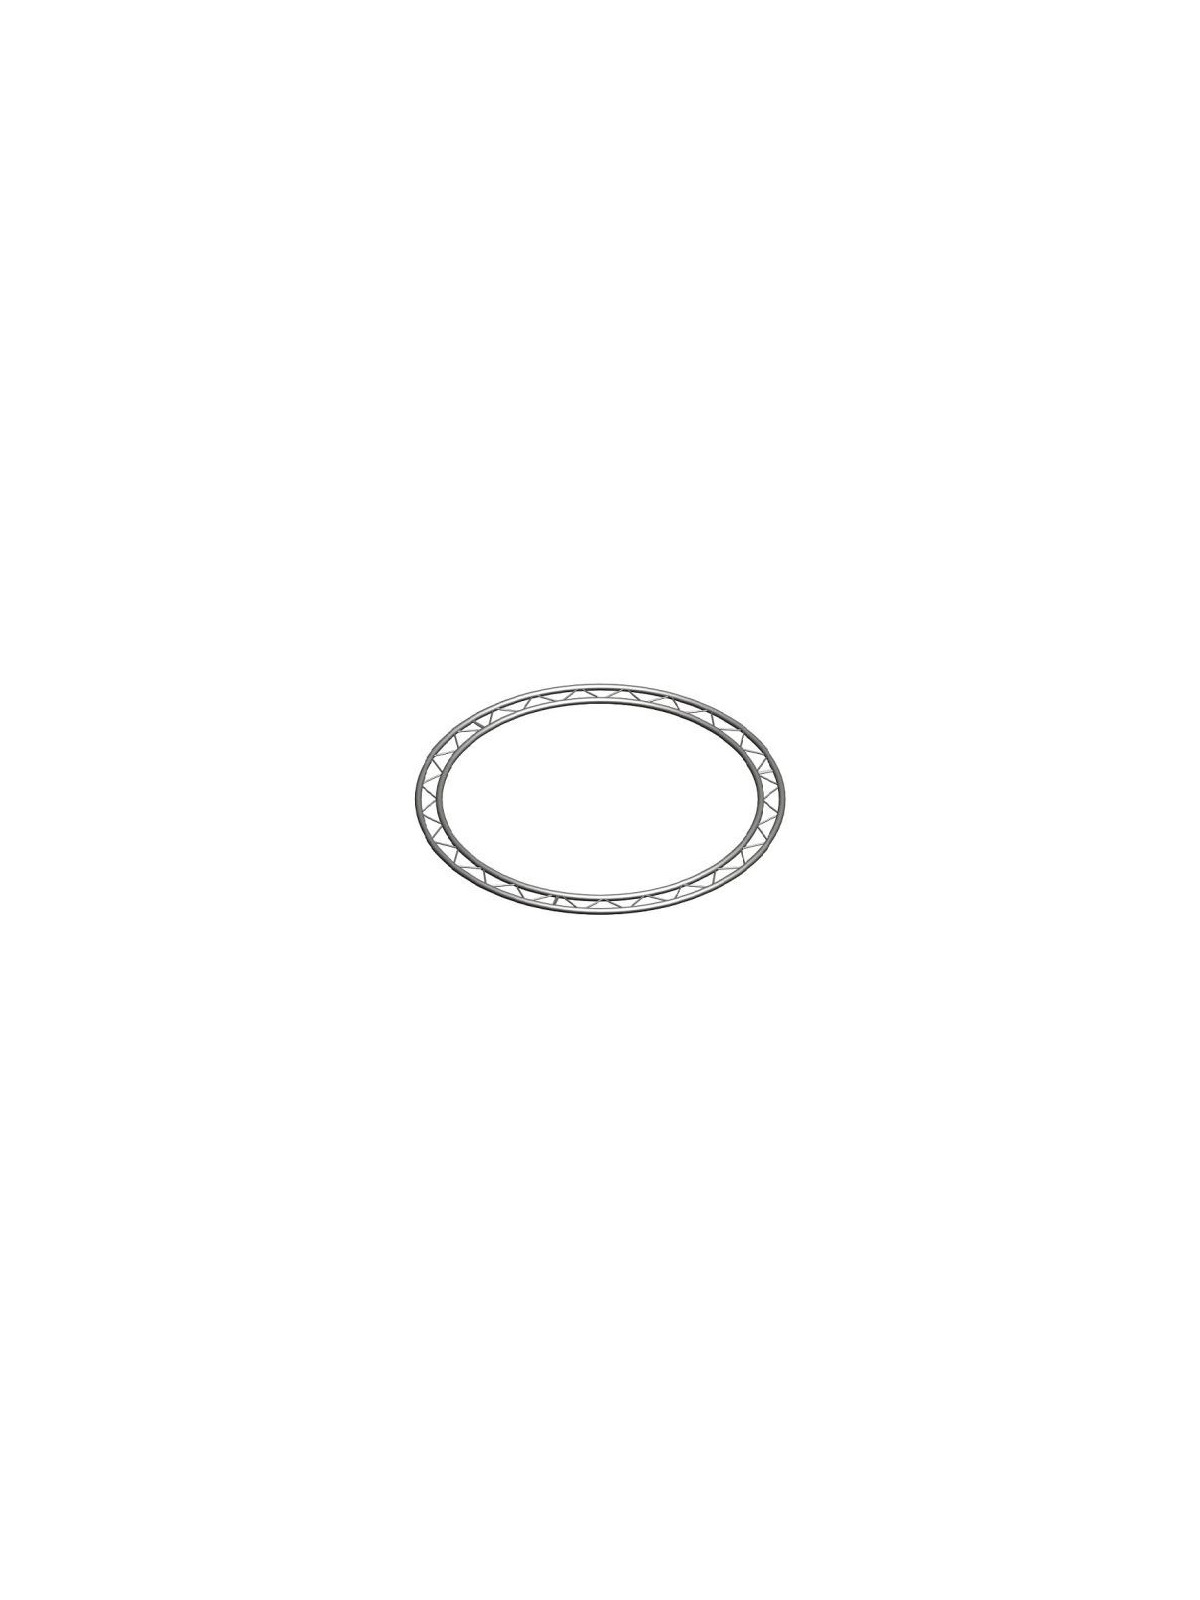 Asd cercle 5.50m Echelle plate 290